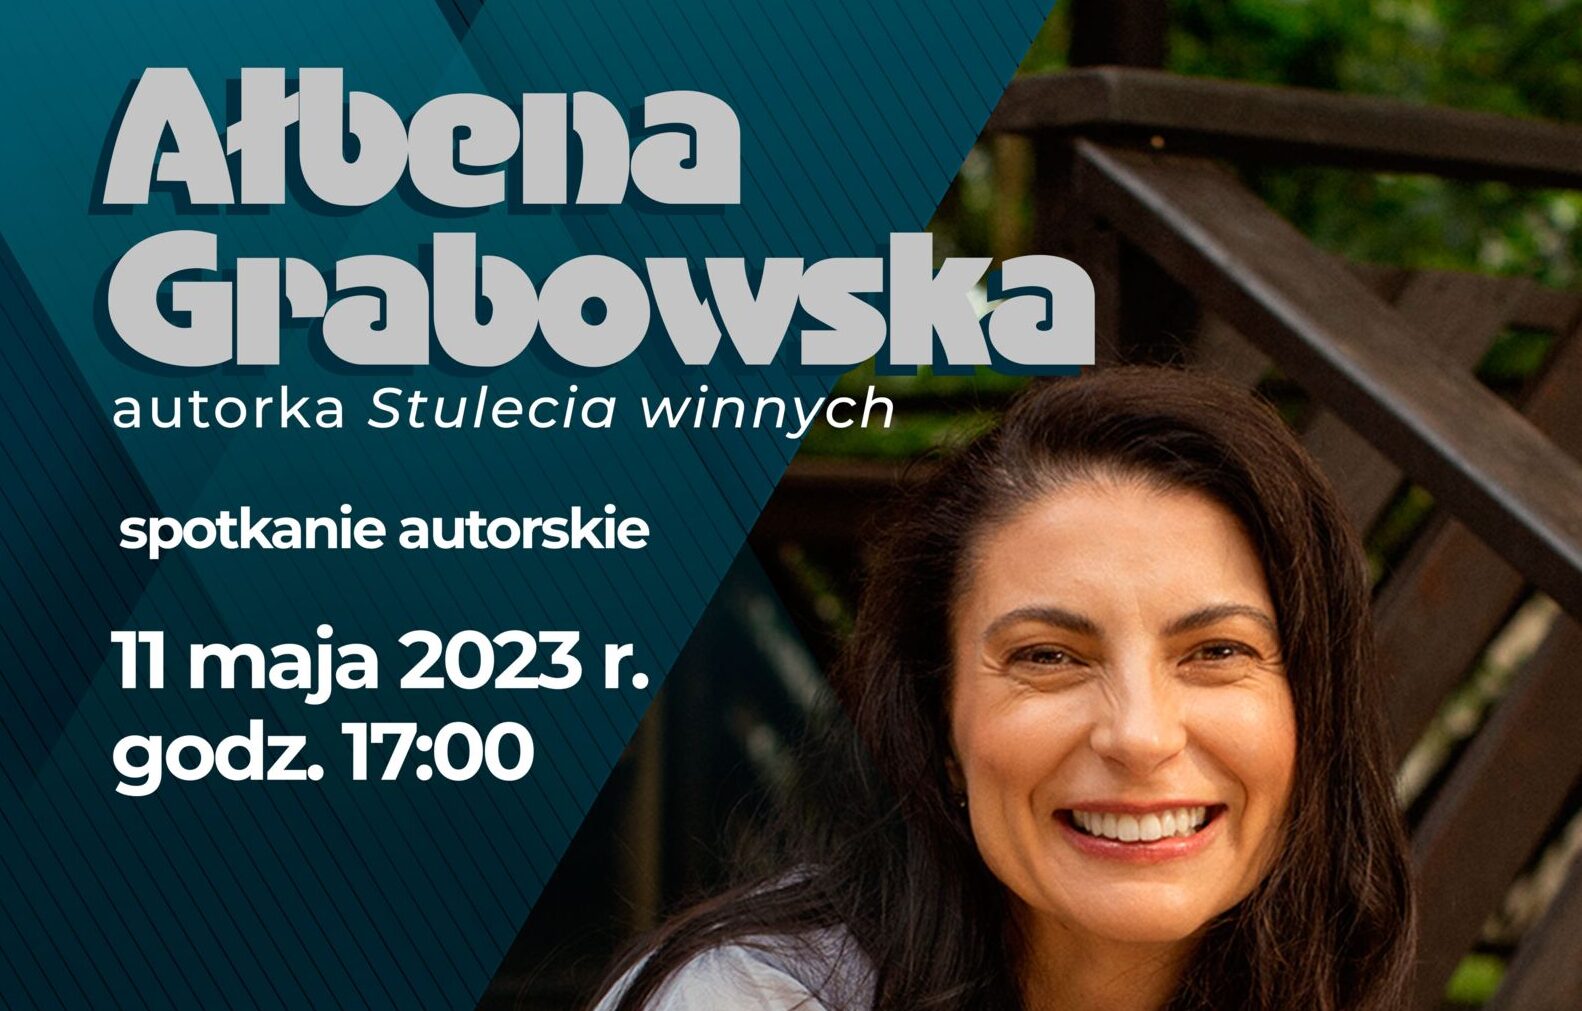 You are currently viewing Spotkanie autorskie z Ałbeną Grabowską w Wojewódzkiej Bibliotece Publicznej